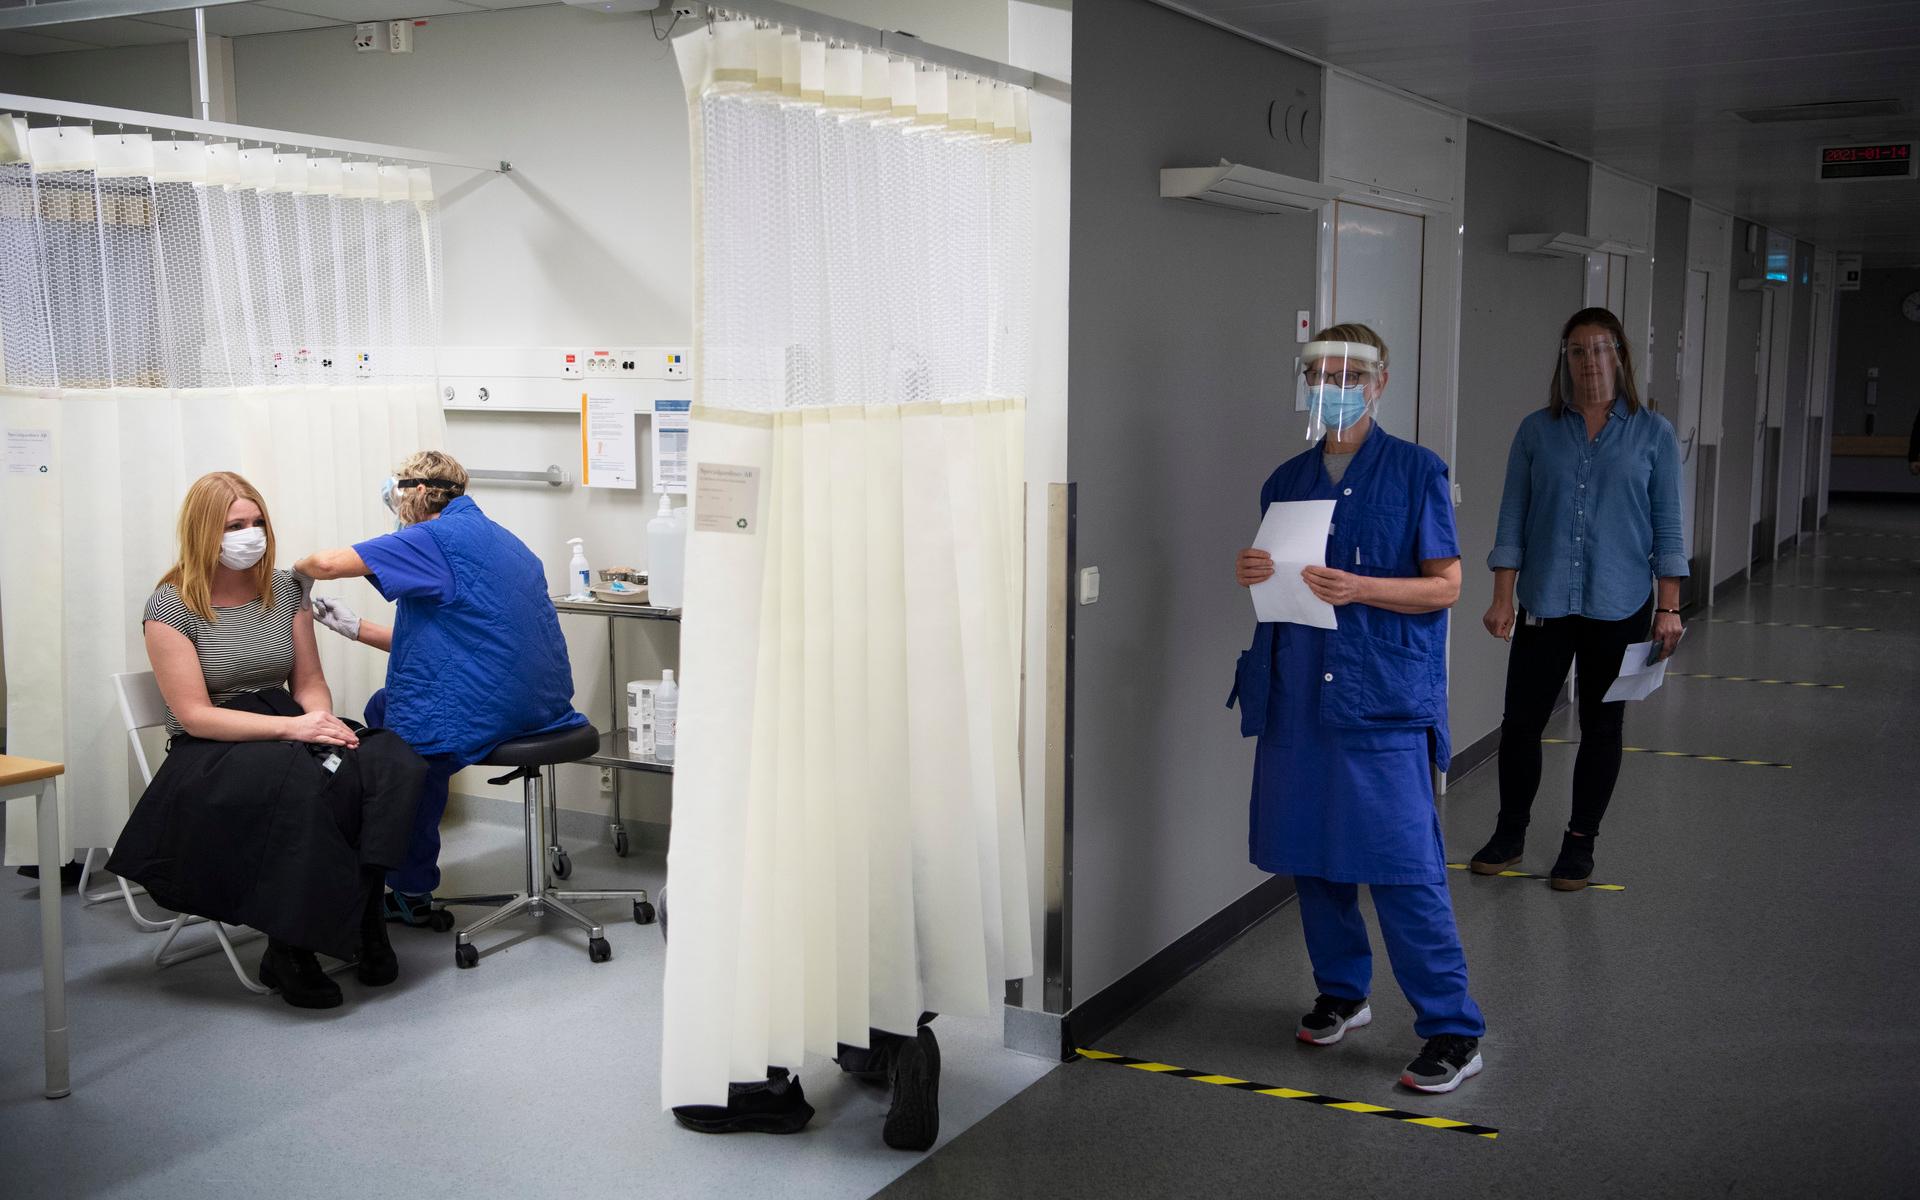 Vårdpersonal har vaccinerats mot covid-19 på sina arbetsplatser tidigare i år. Nu har Västra Götalandsregionen gett grönt ljus till att de omgående kan få sin tredje vaccindos där också.